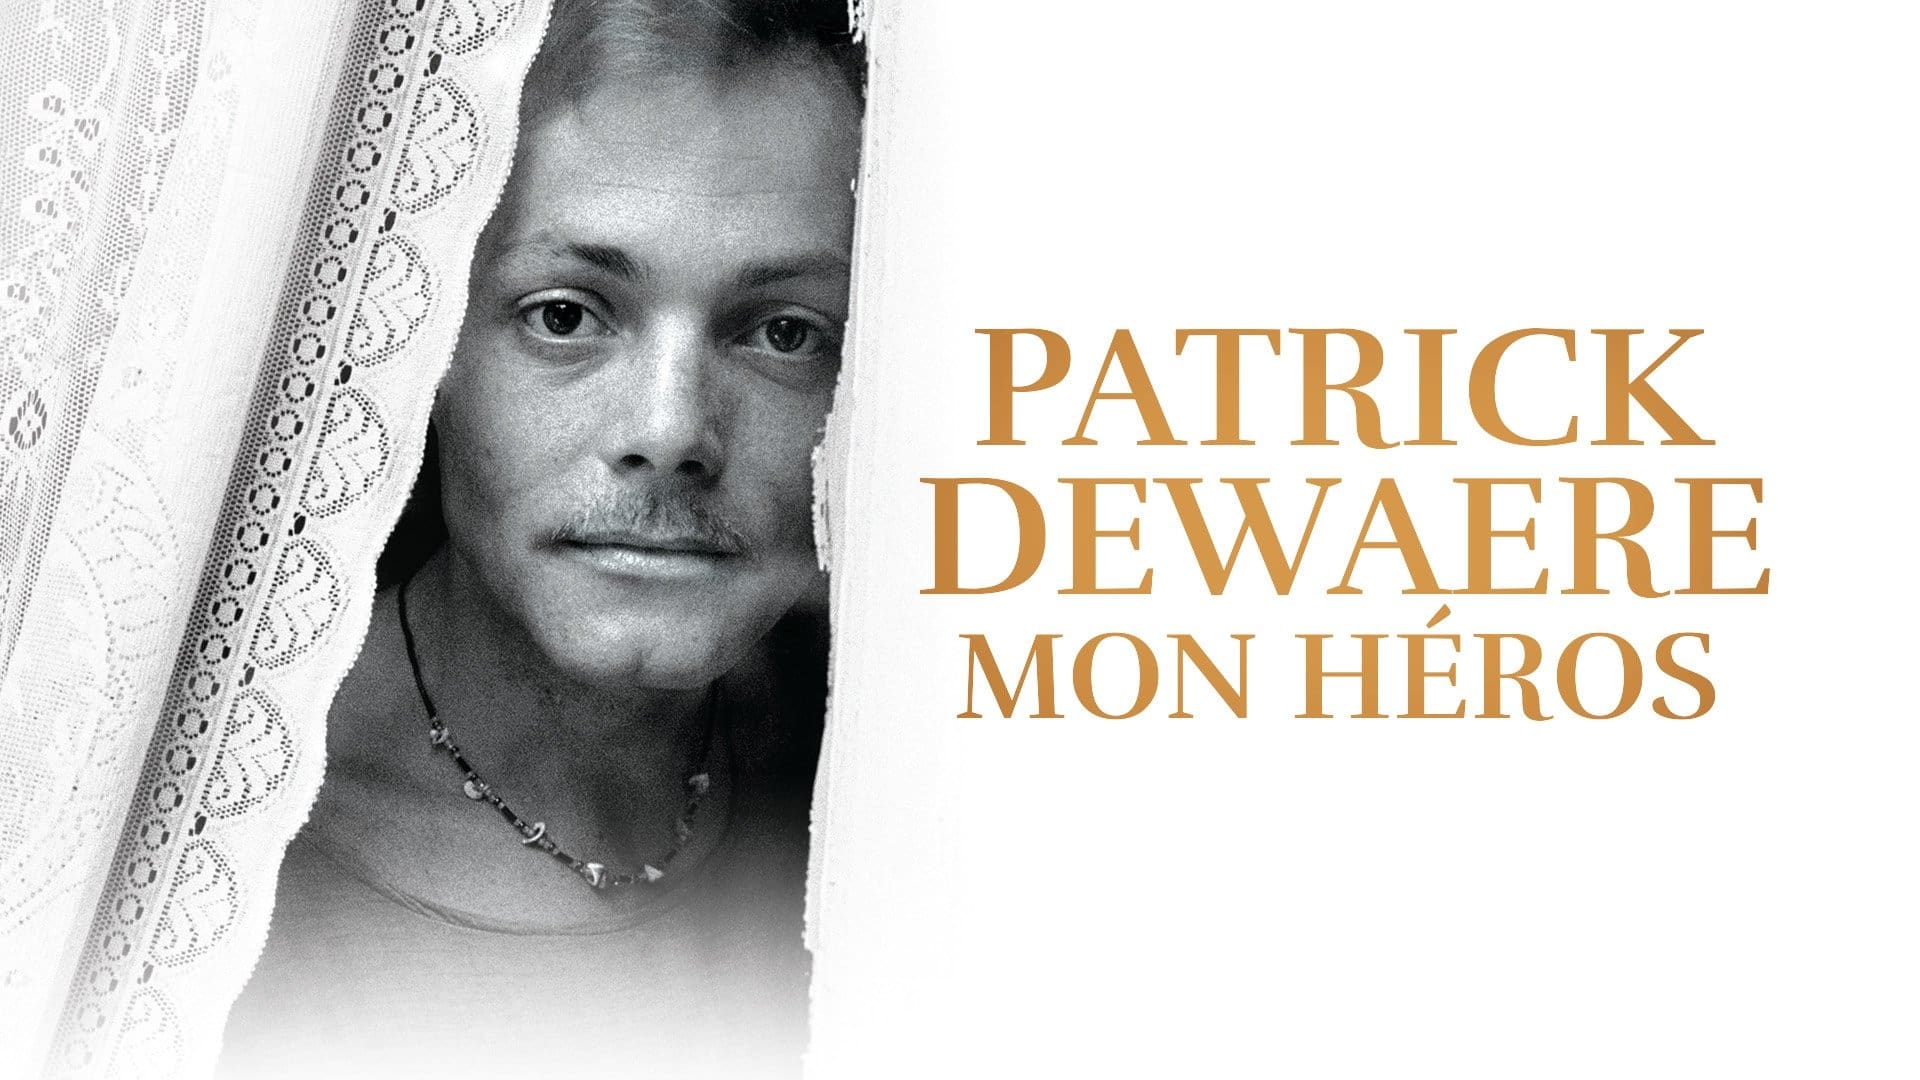 Patrick Dewaere, mon héros